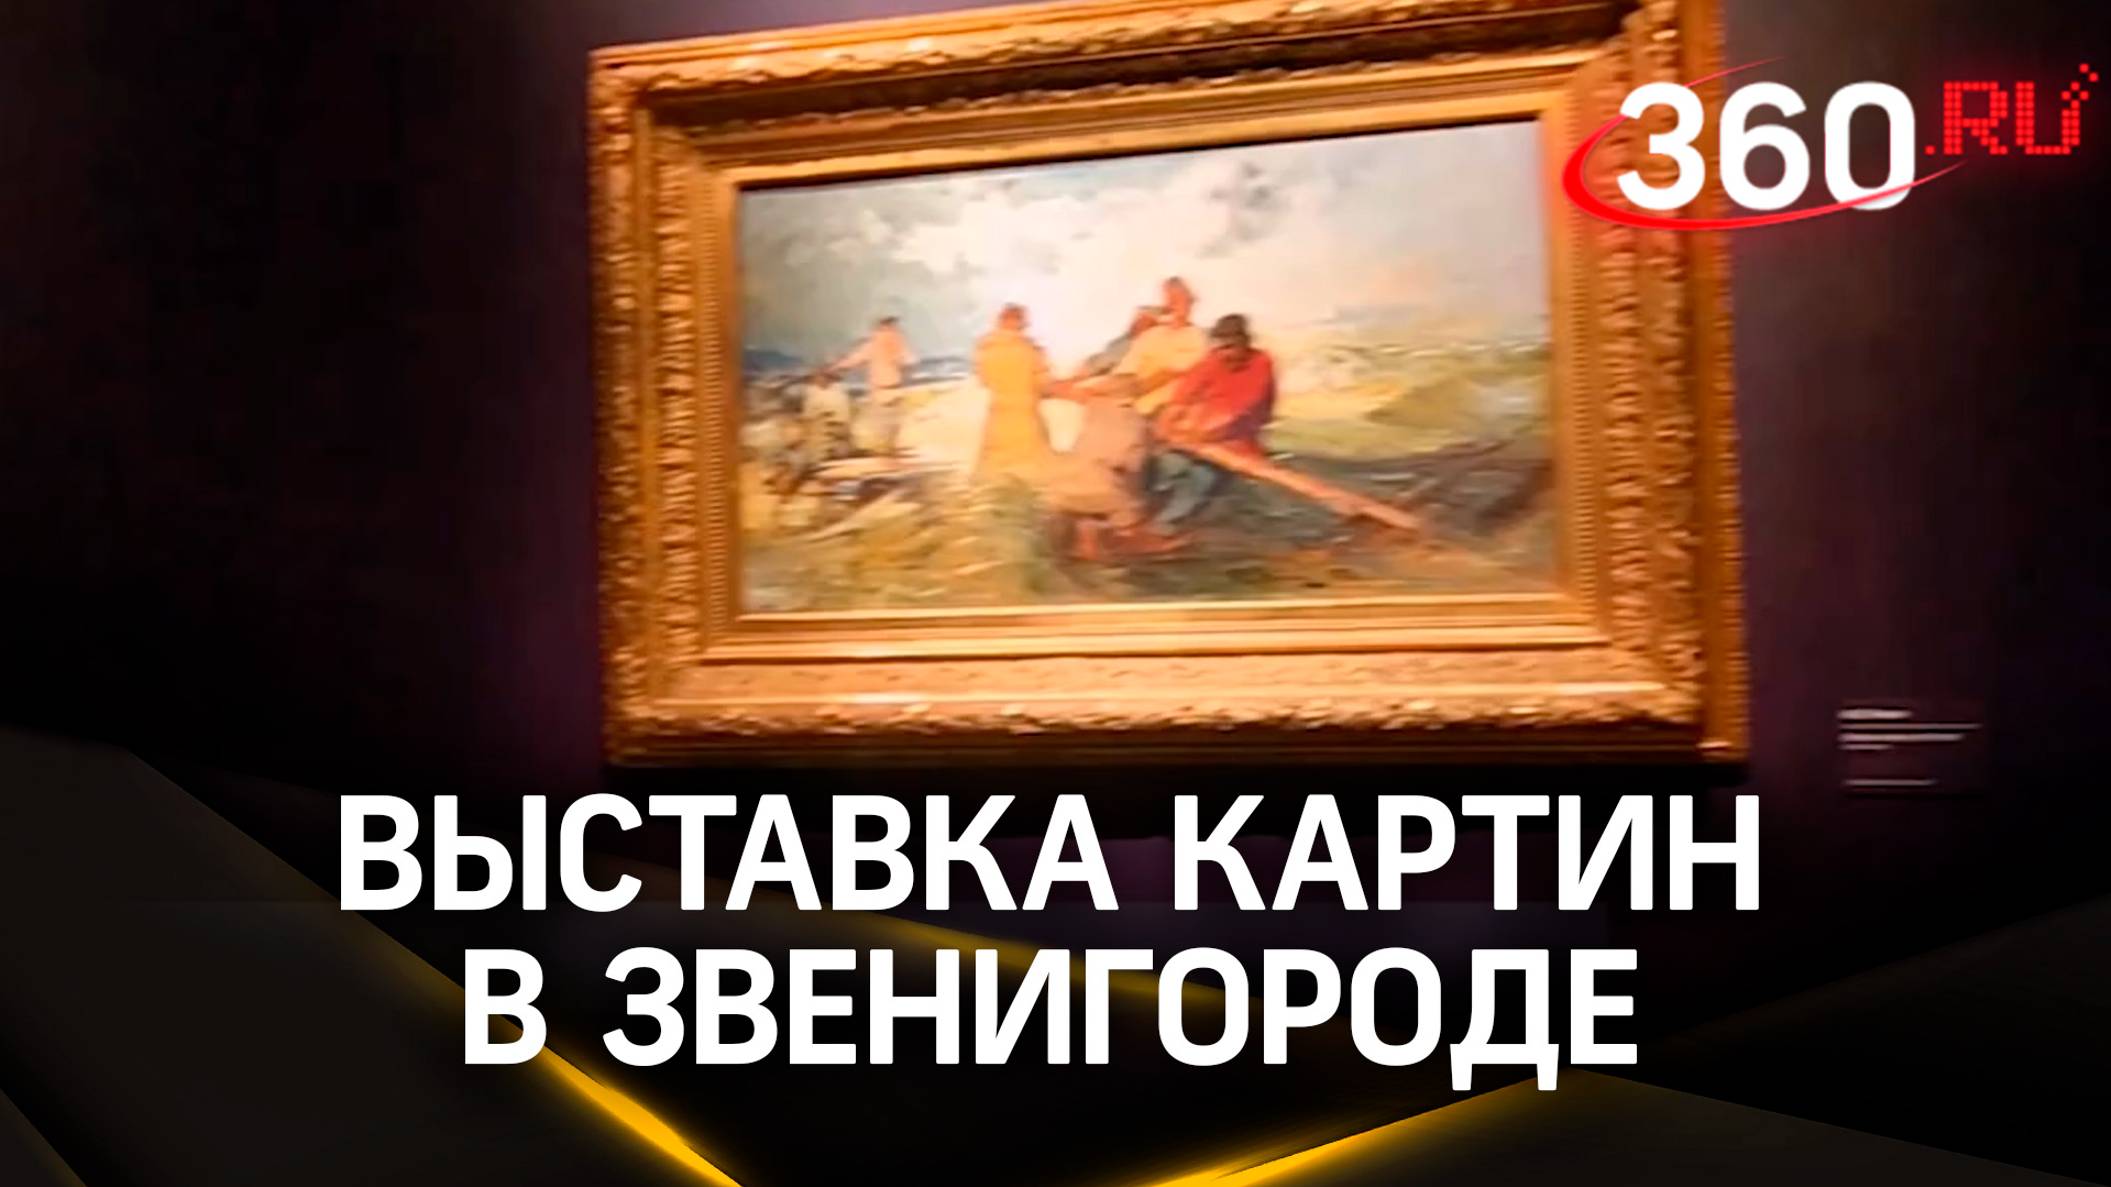 Чарующее искусство: новая выставка открылась в Звенигороде